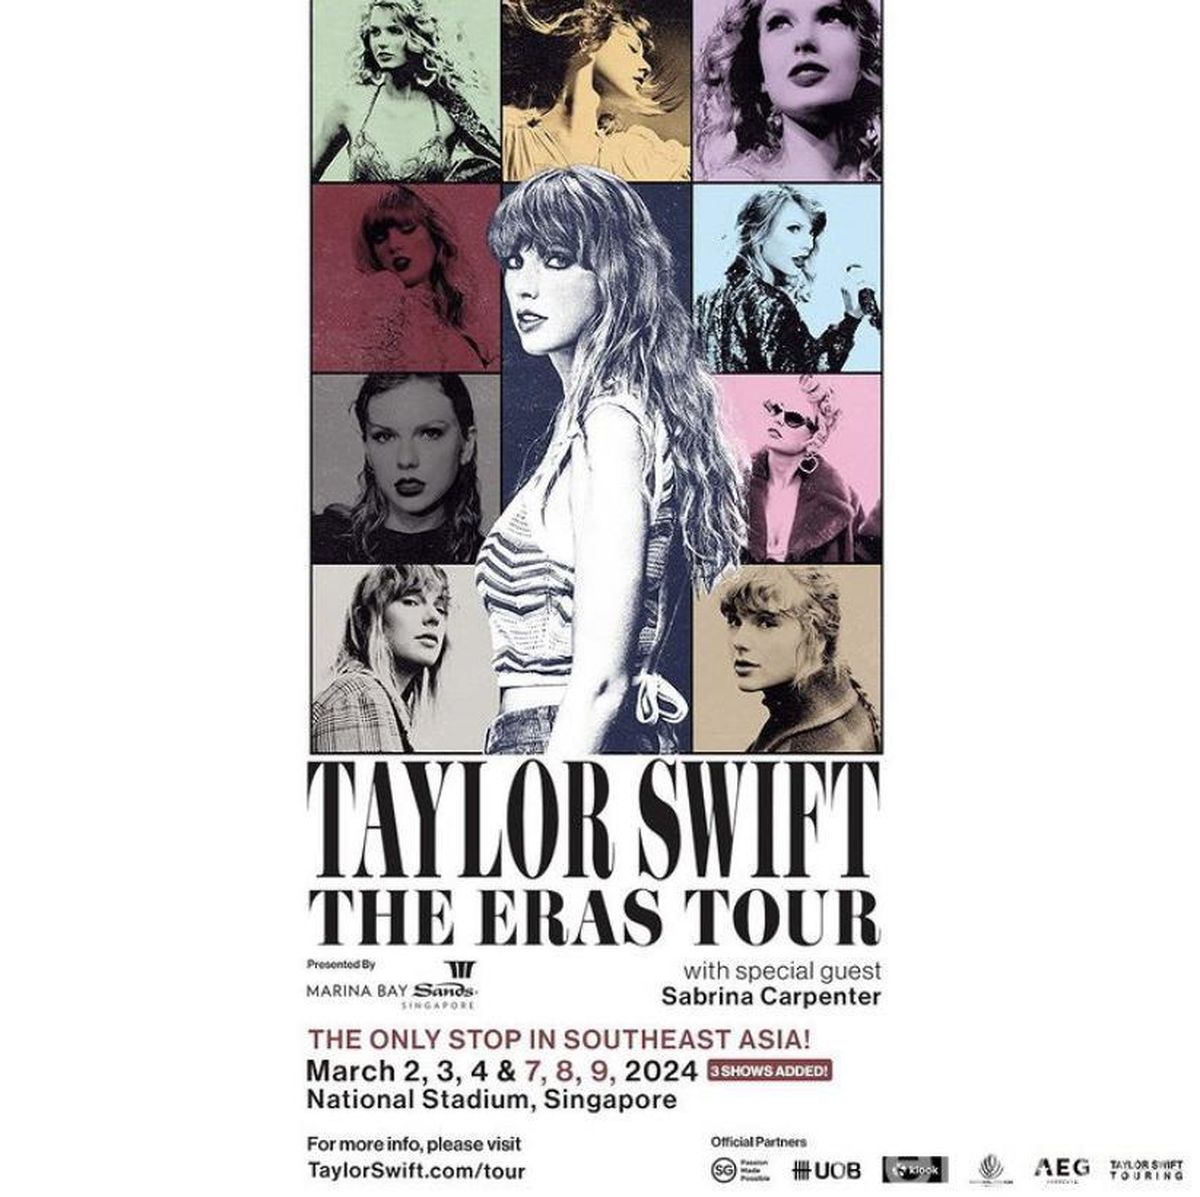 Tiket Konser Taylor Swift di Singapore dibuka hari ini.